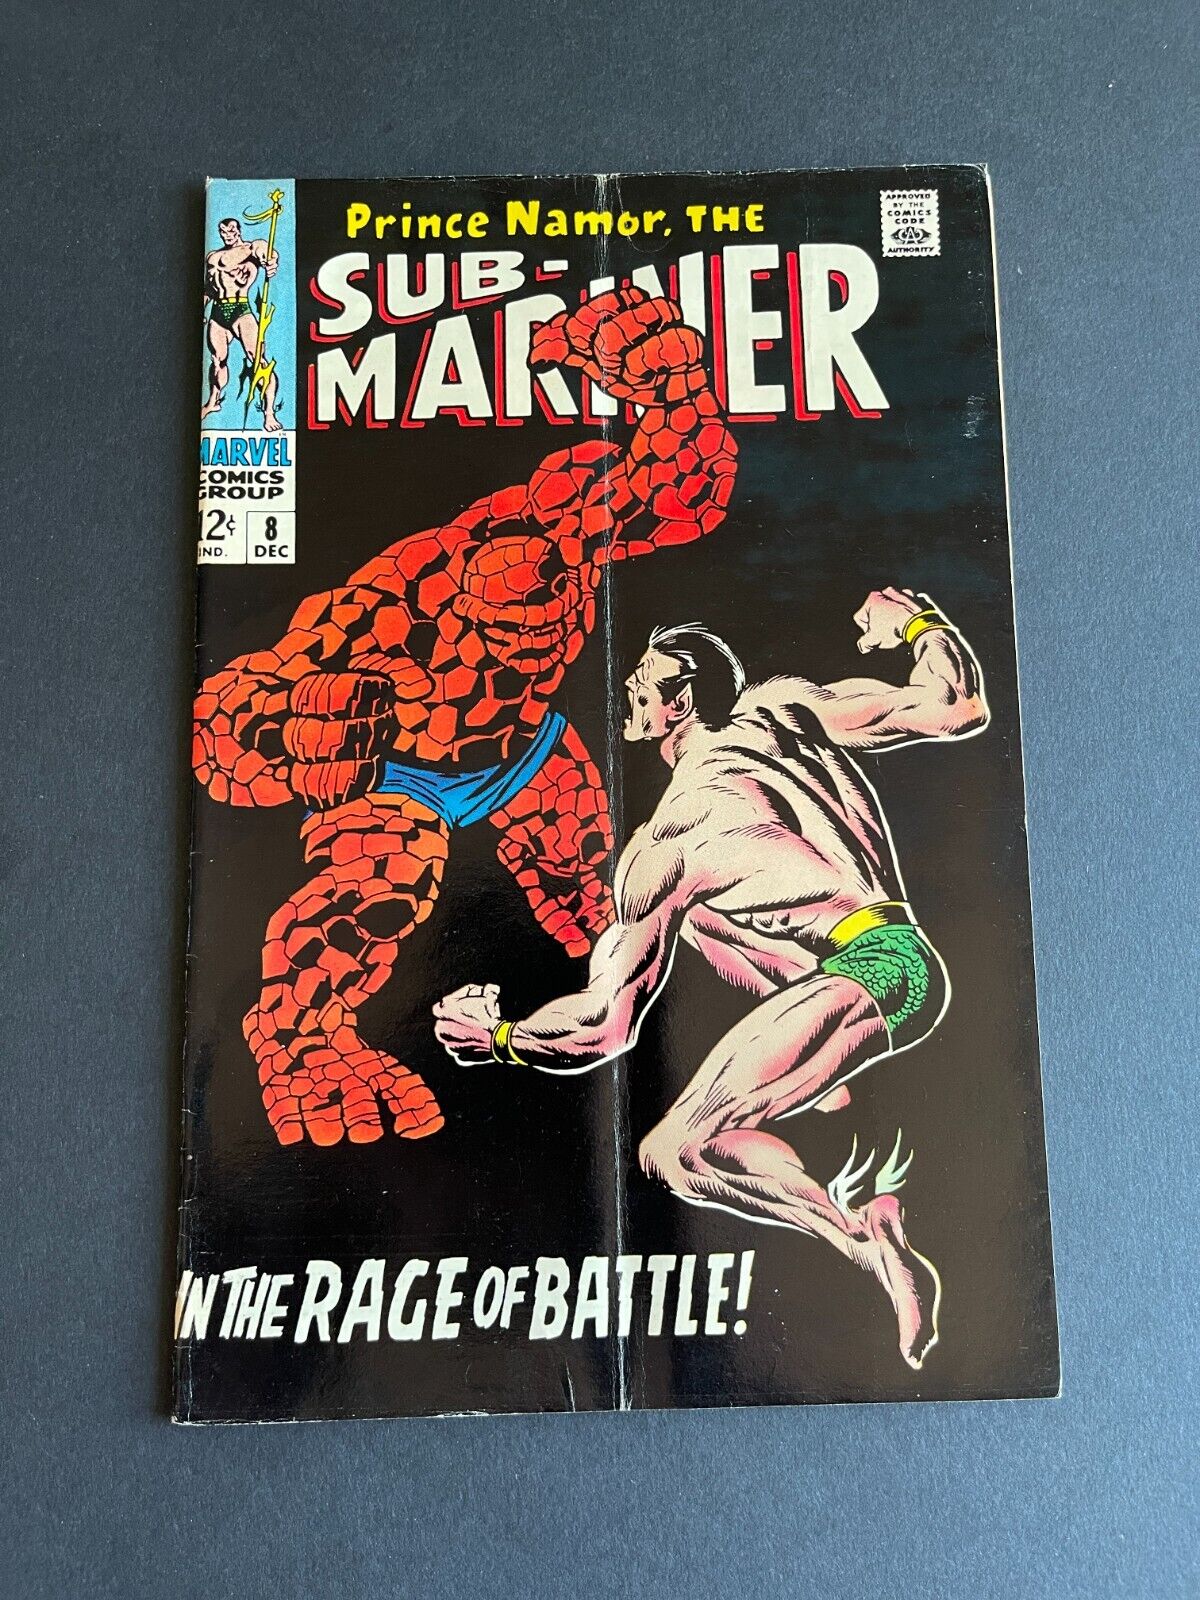 Sub-Mariner #8 - Thing vs Sub-Mariner (Marvel, 1968) VG+